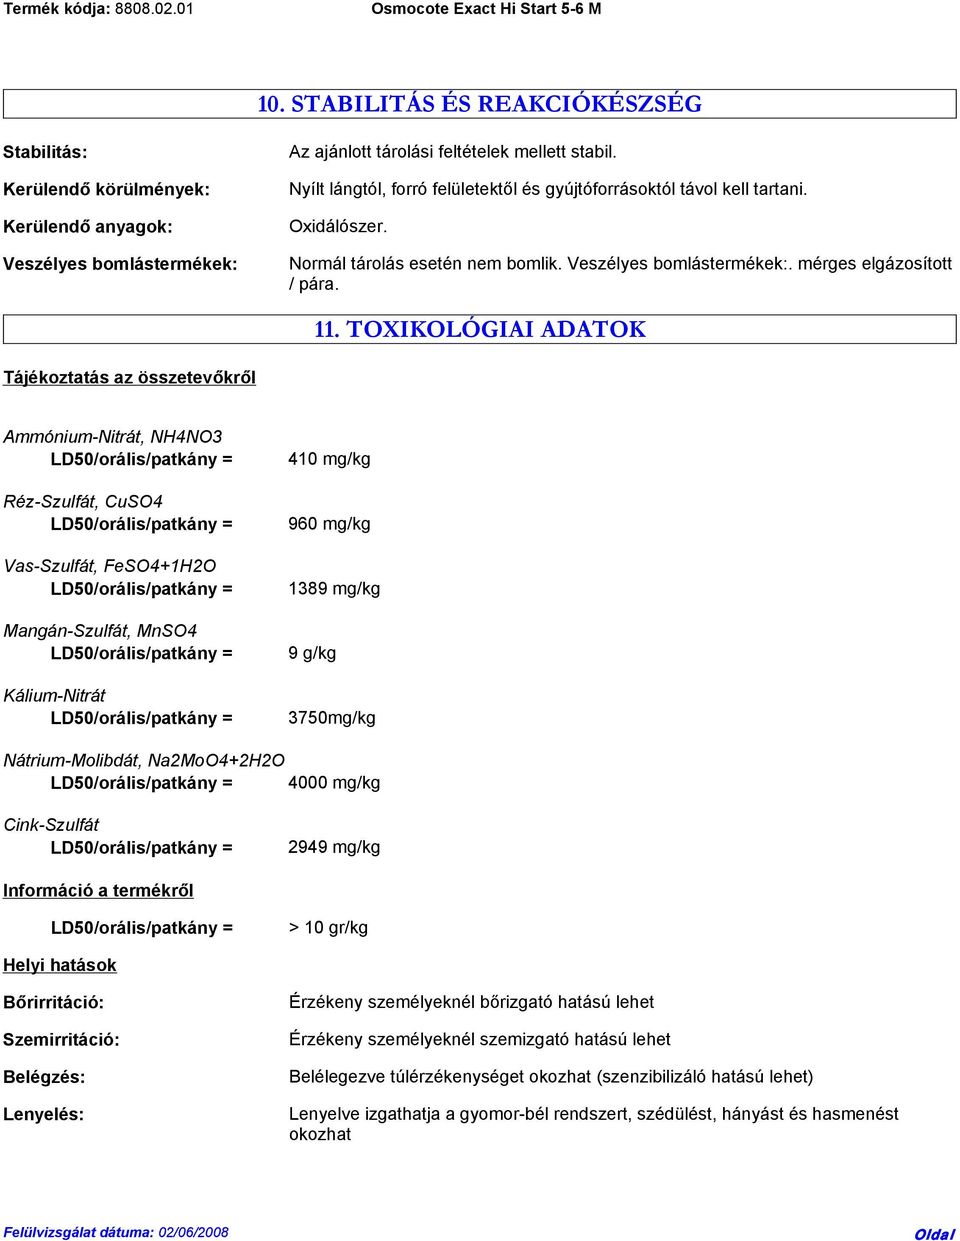 TOXIKOLÓGIAI ADATOK Tájékoztatás az összetevőkről Ammónium-Nitrát, NH4NO3 Réz-Szulfát, CuSO4 Vas-Szulfát, FeSO4+1H2O Mangán-Szulfát, MnSO4 Kálium-Nitrát 410 mg/kg 960 mg/kg 1389 mg/kg 9 g/kg